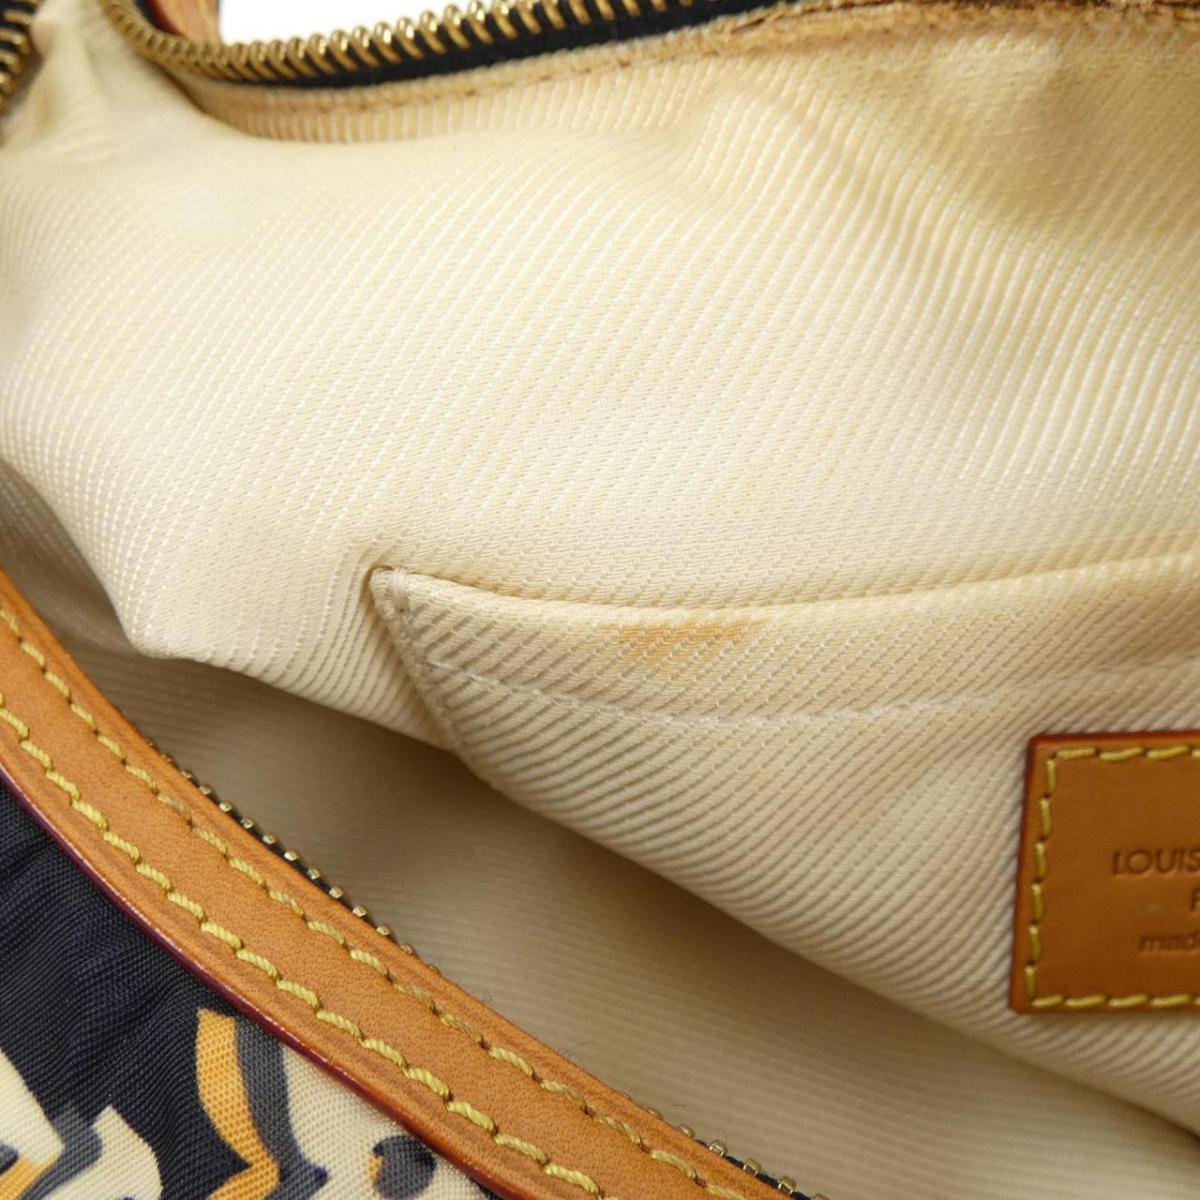 Louis Vuitton M40238 Shoulder Bag